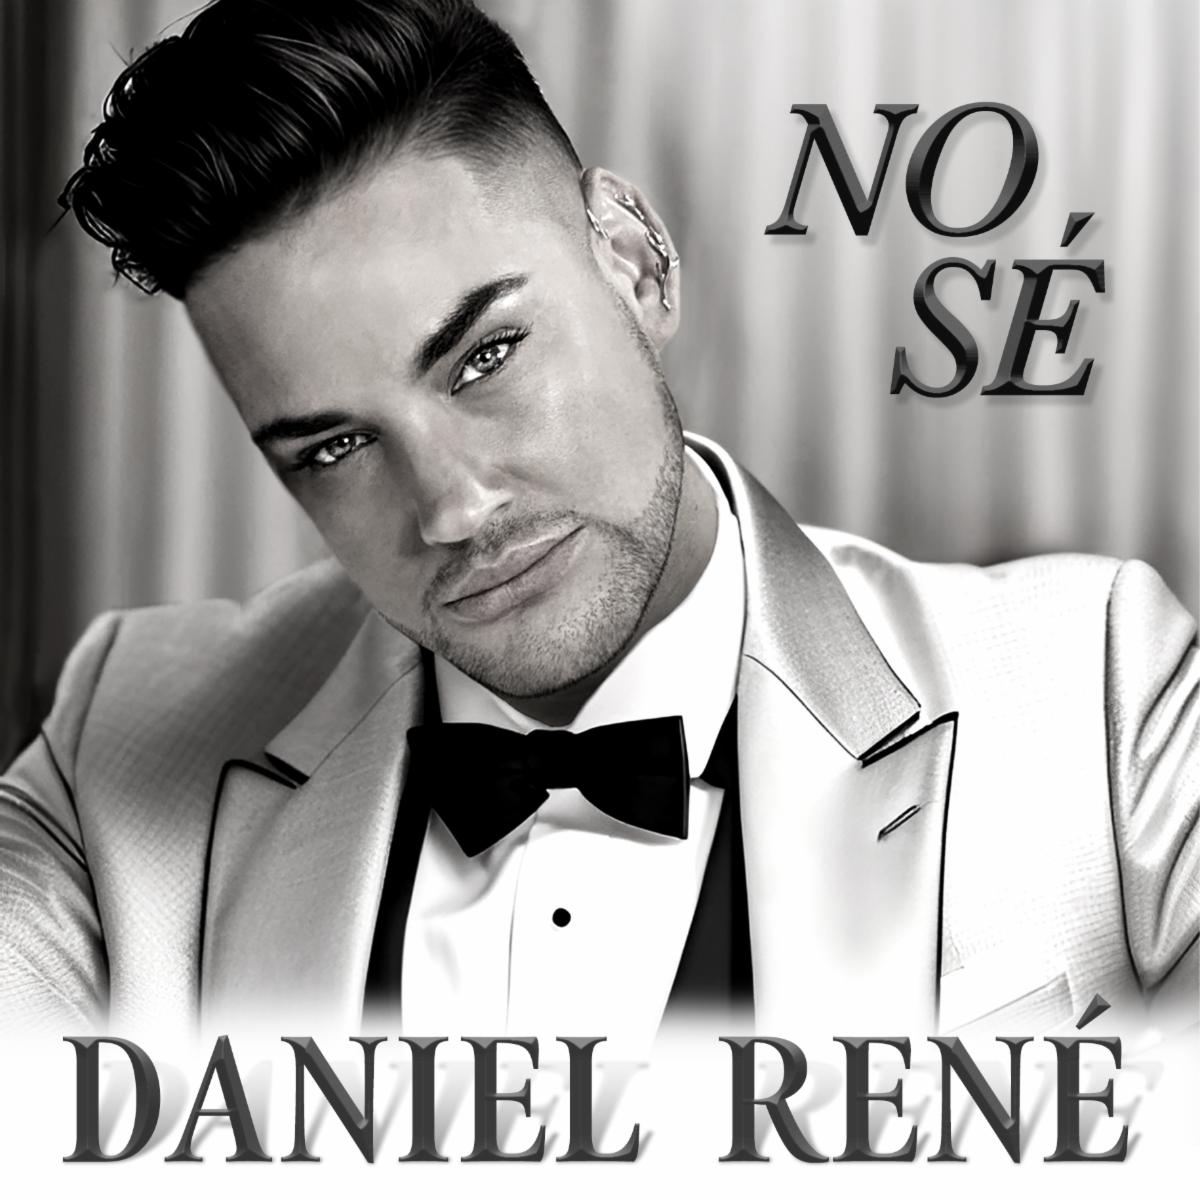 DANIEL RENÉ lanza nuevo sencillo “No Sé”